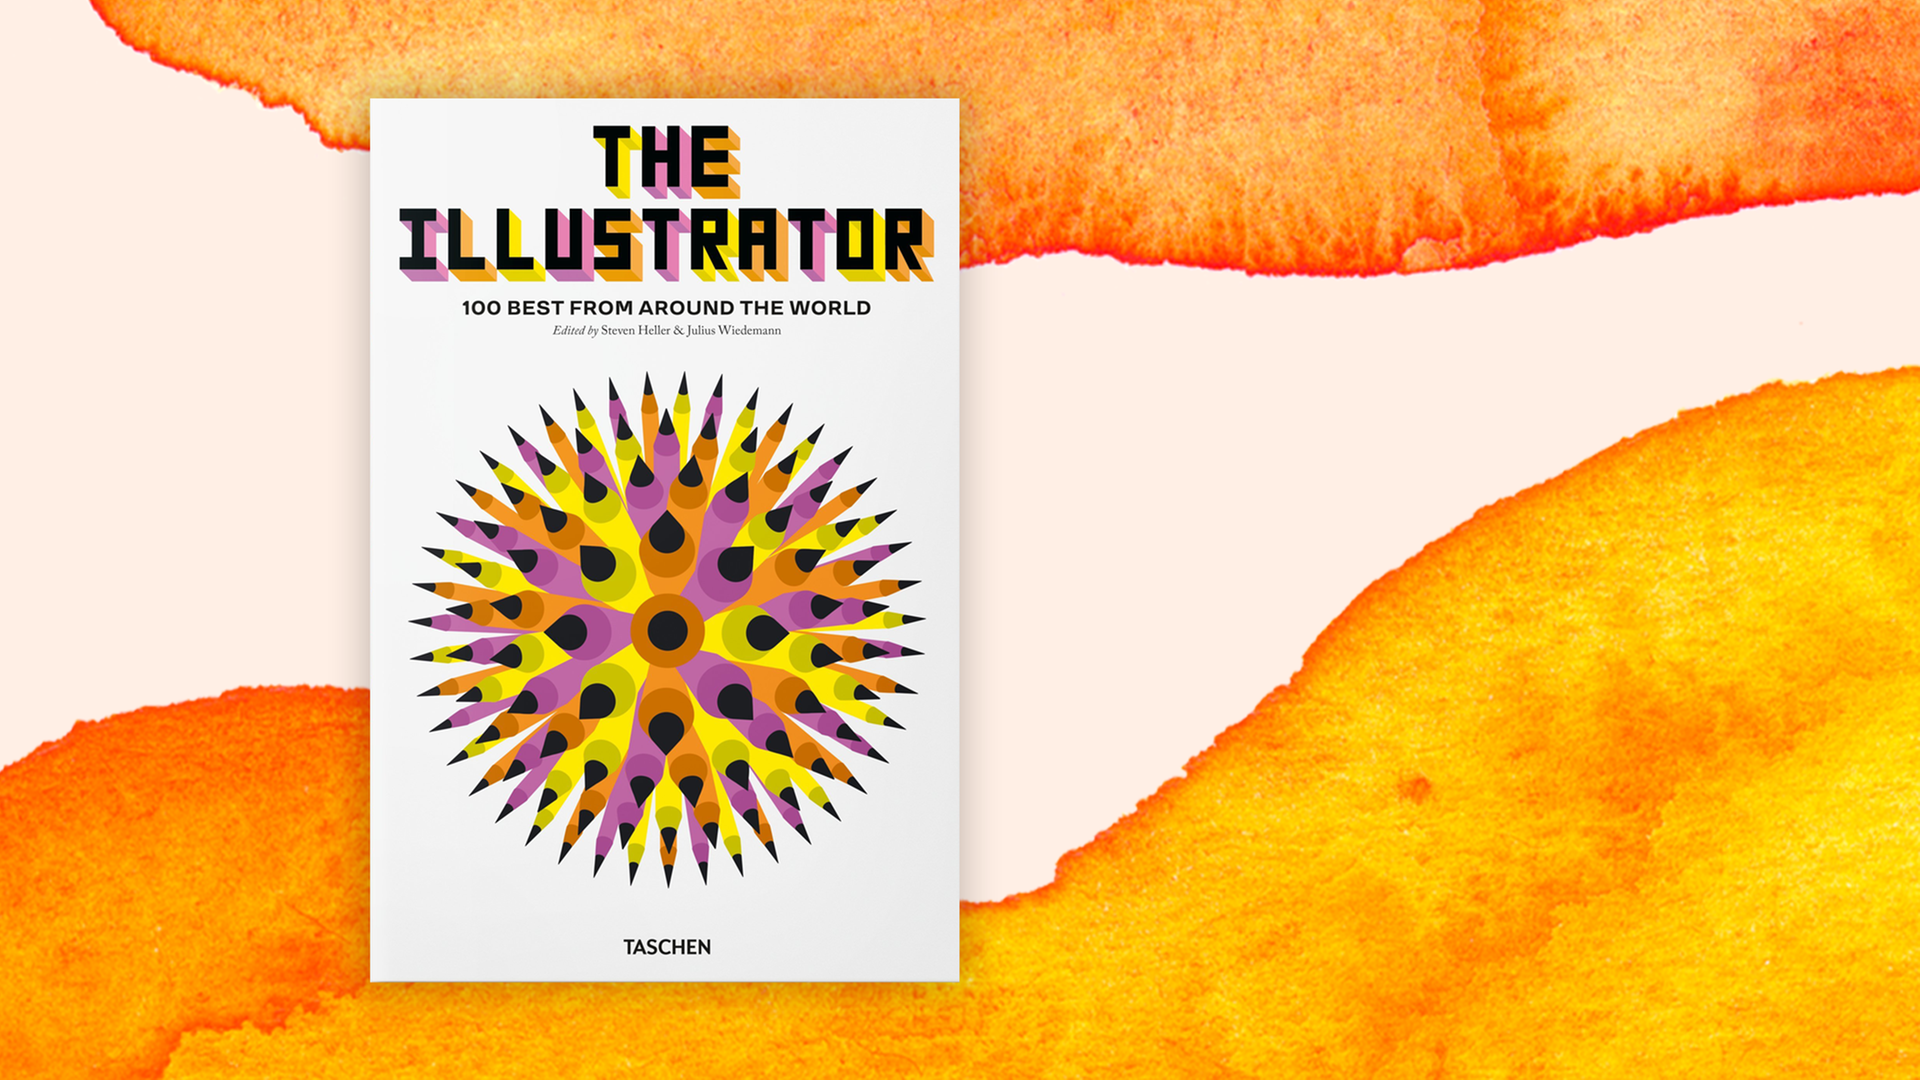 Das Cover des Buches "The Illustrator".